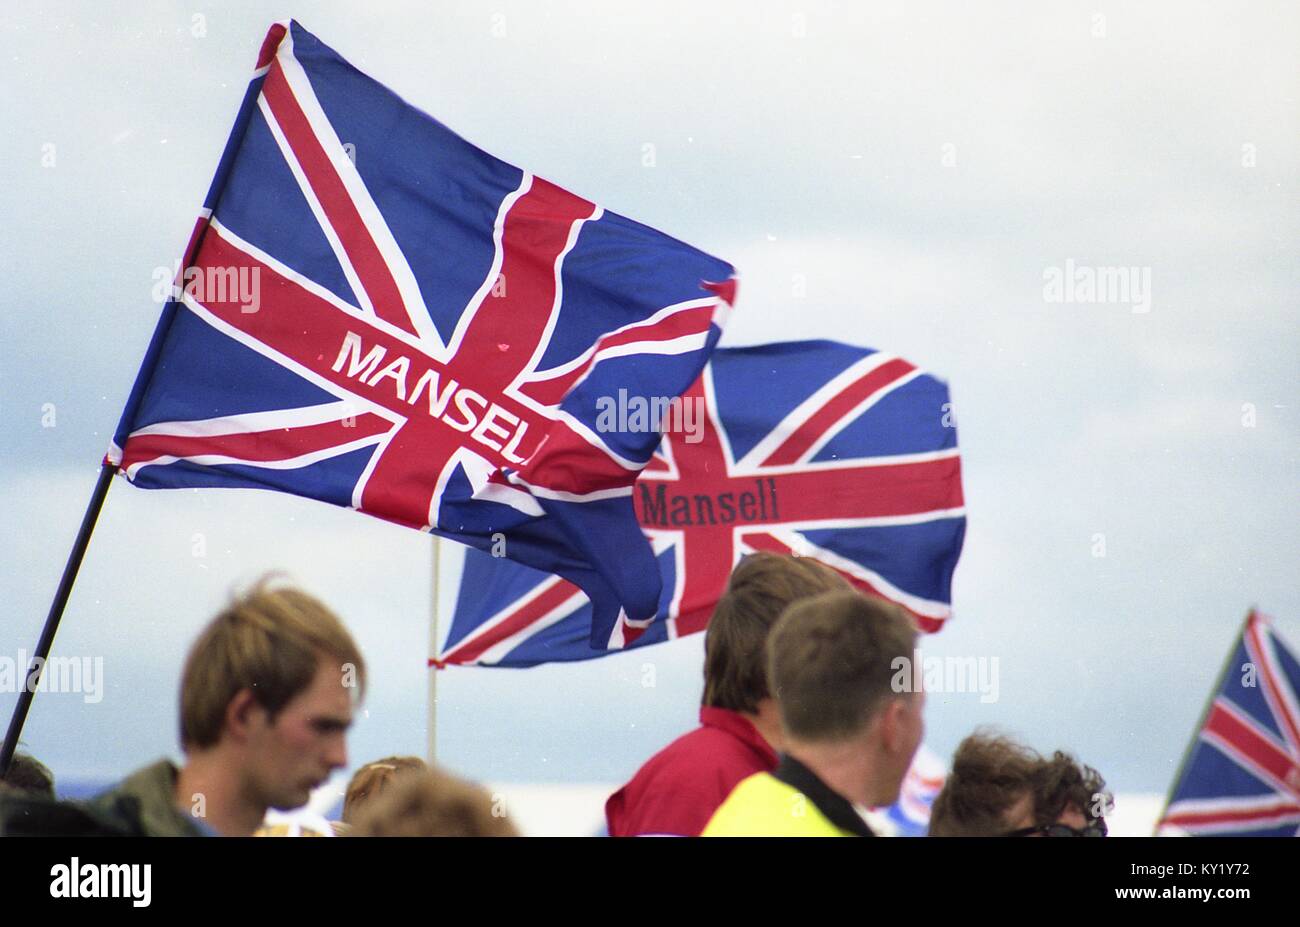 Nigel Mansell unione jack bandiere che sventolano al 1992 British Grand Prix incontro, Silverstone. Foto Stock